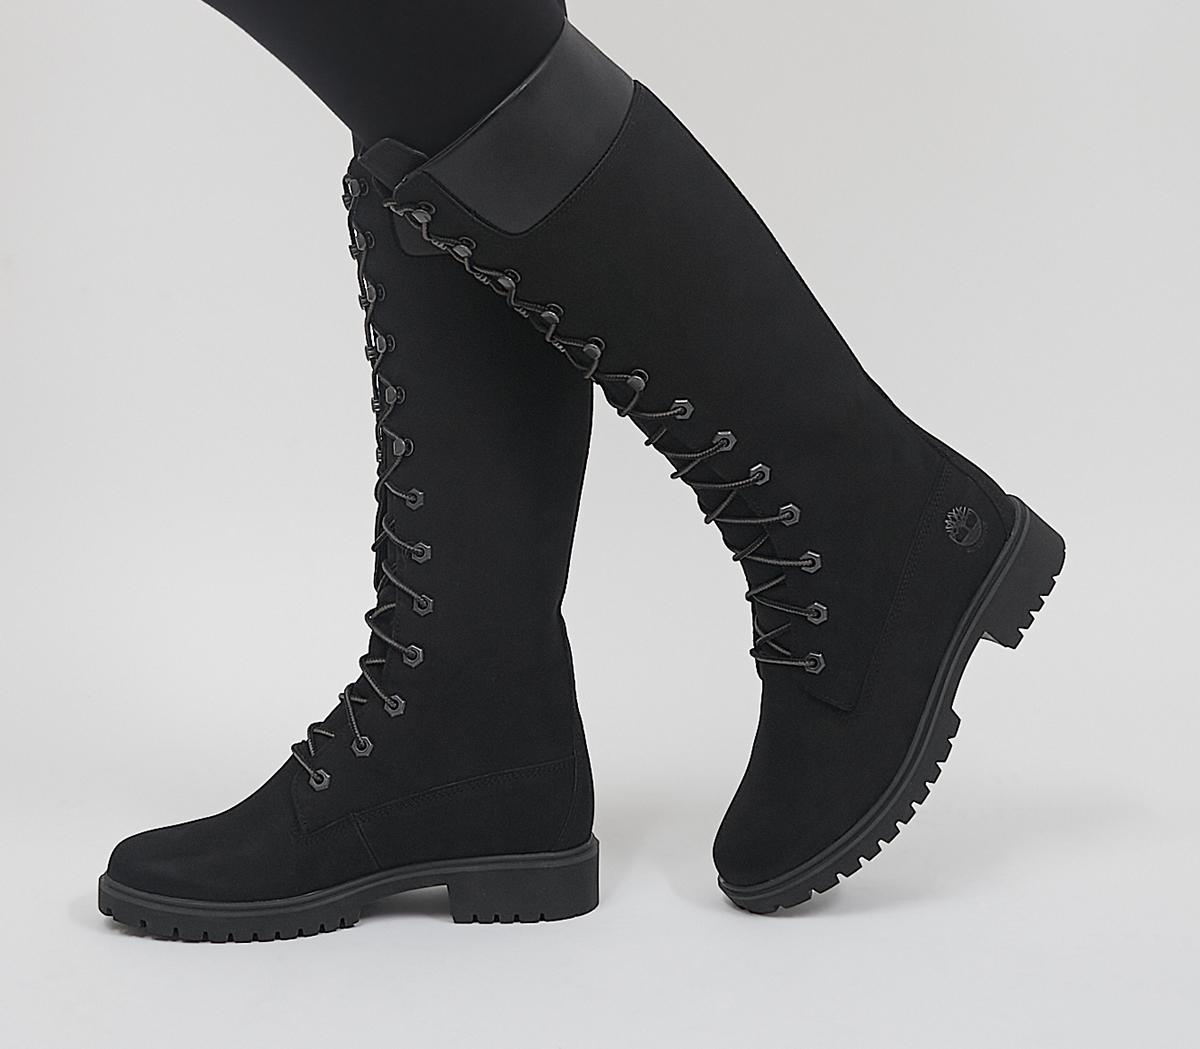 Continu Verhoogd Medisch wangedrag Timberland 14 Inch Premium Boots Black Nubuck - Knee High Boots